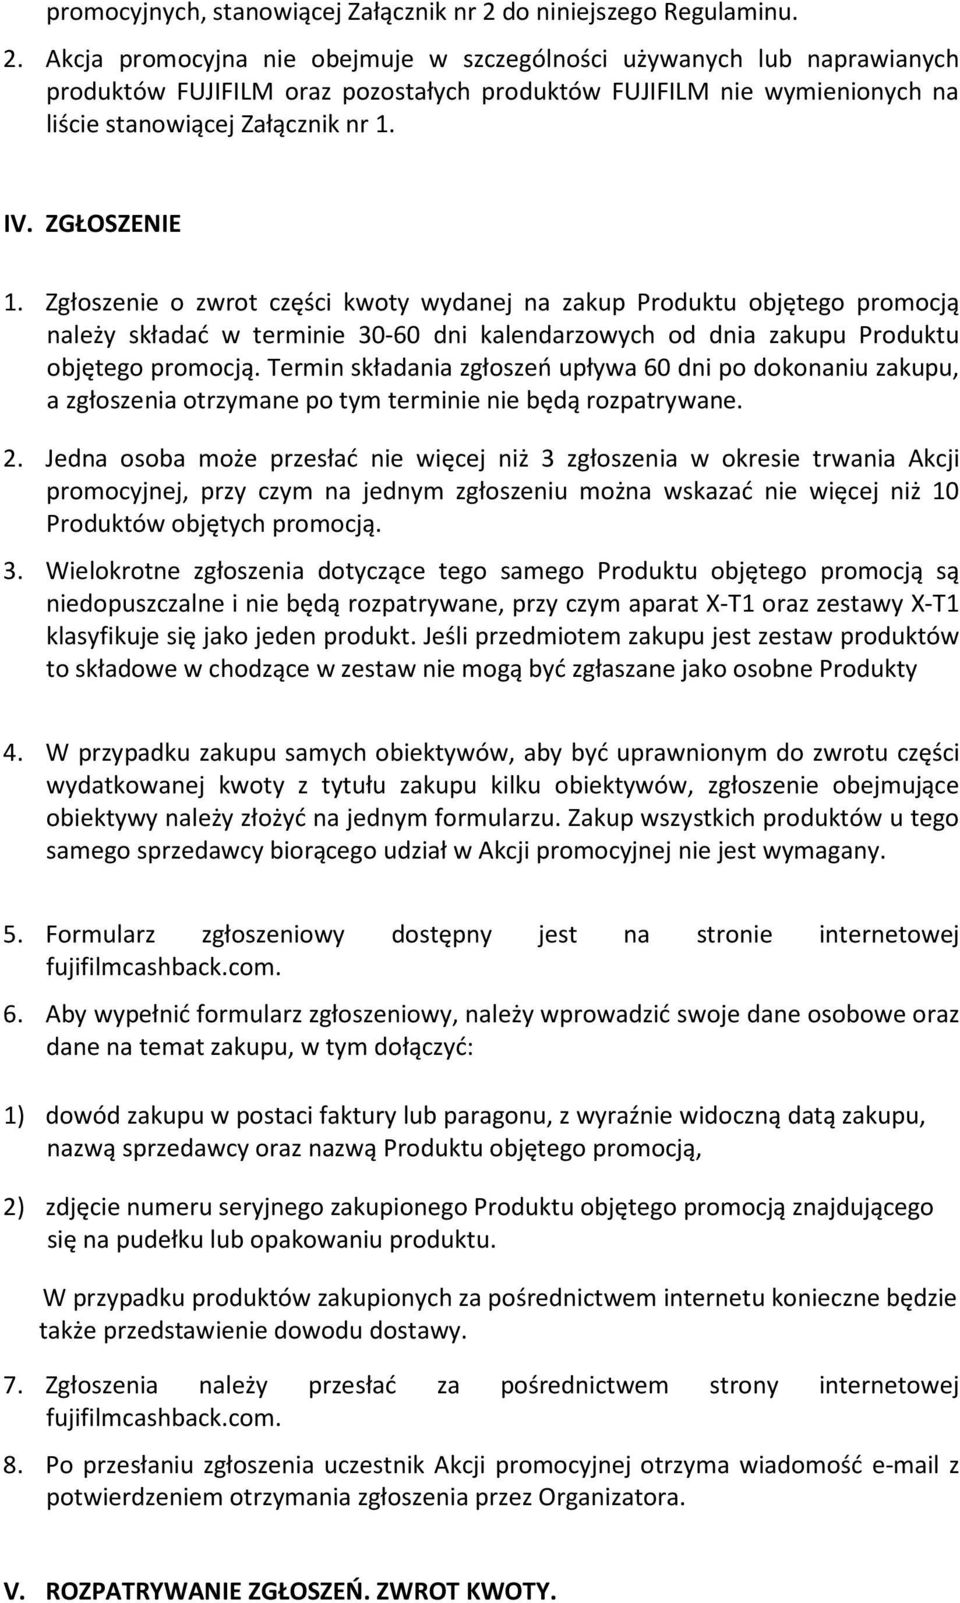 Akcja promocyjna nie obejmuje w szczególności używanych lub naprawianych produktów FUJIFILM oraz pozostałych produktów FUJIFILM nie wymienionych na liście stanowiącej Załącznik nr 1. IV. ZGŁOSZENIE 1.